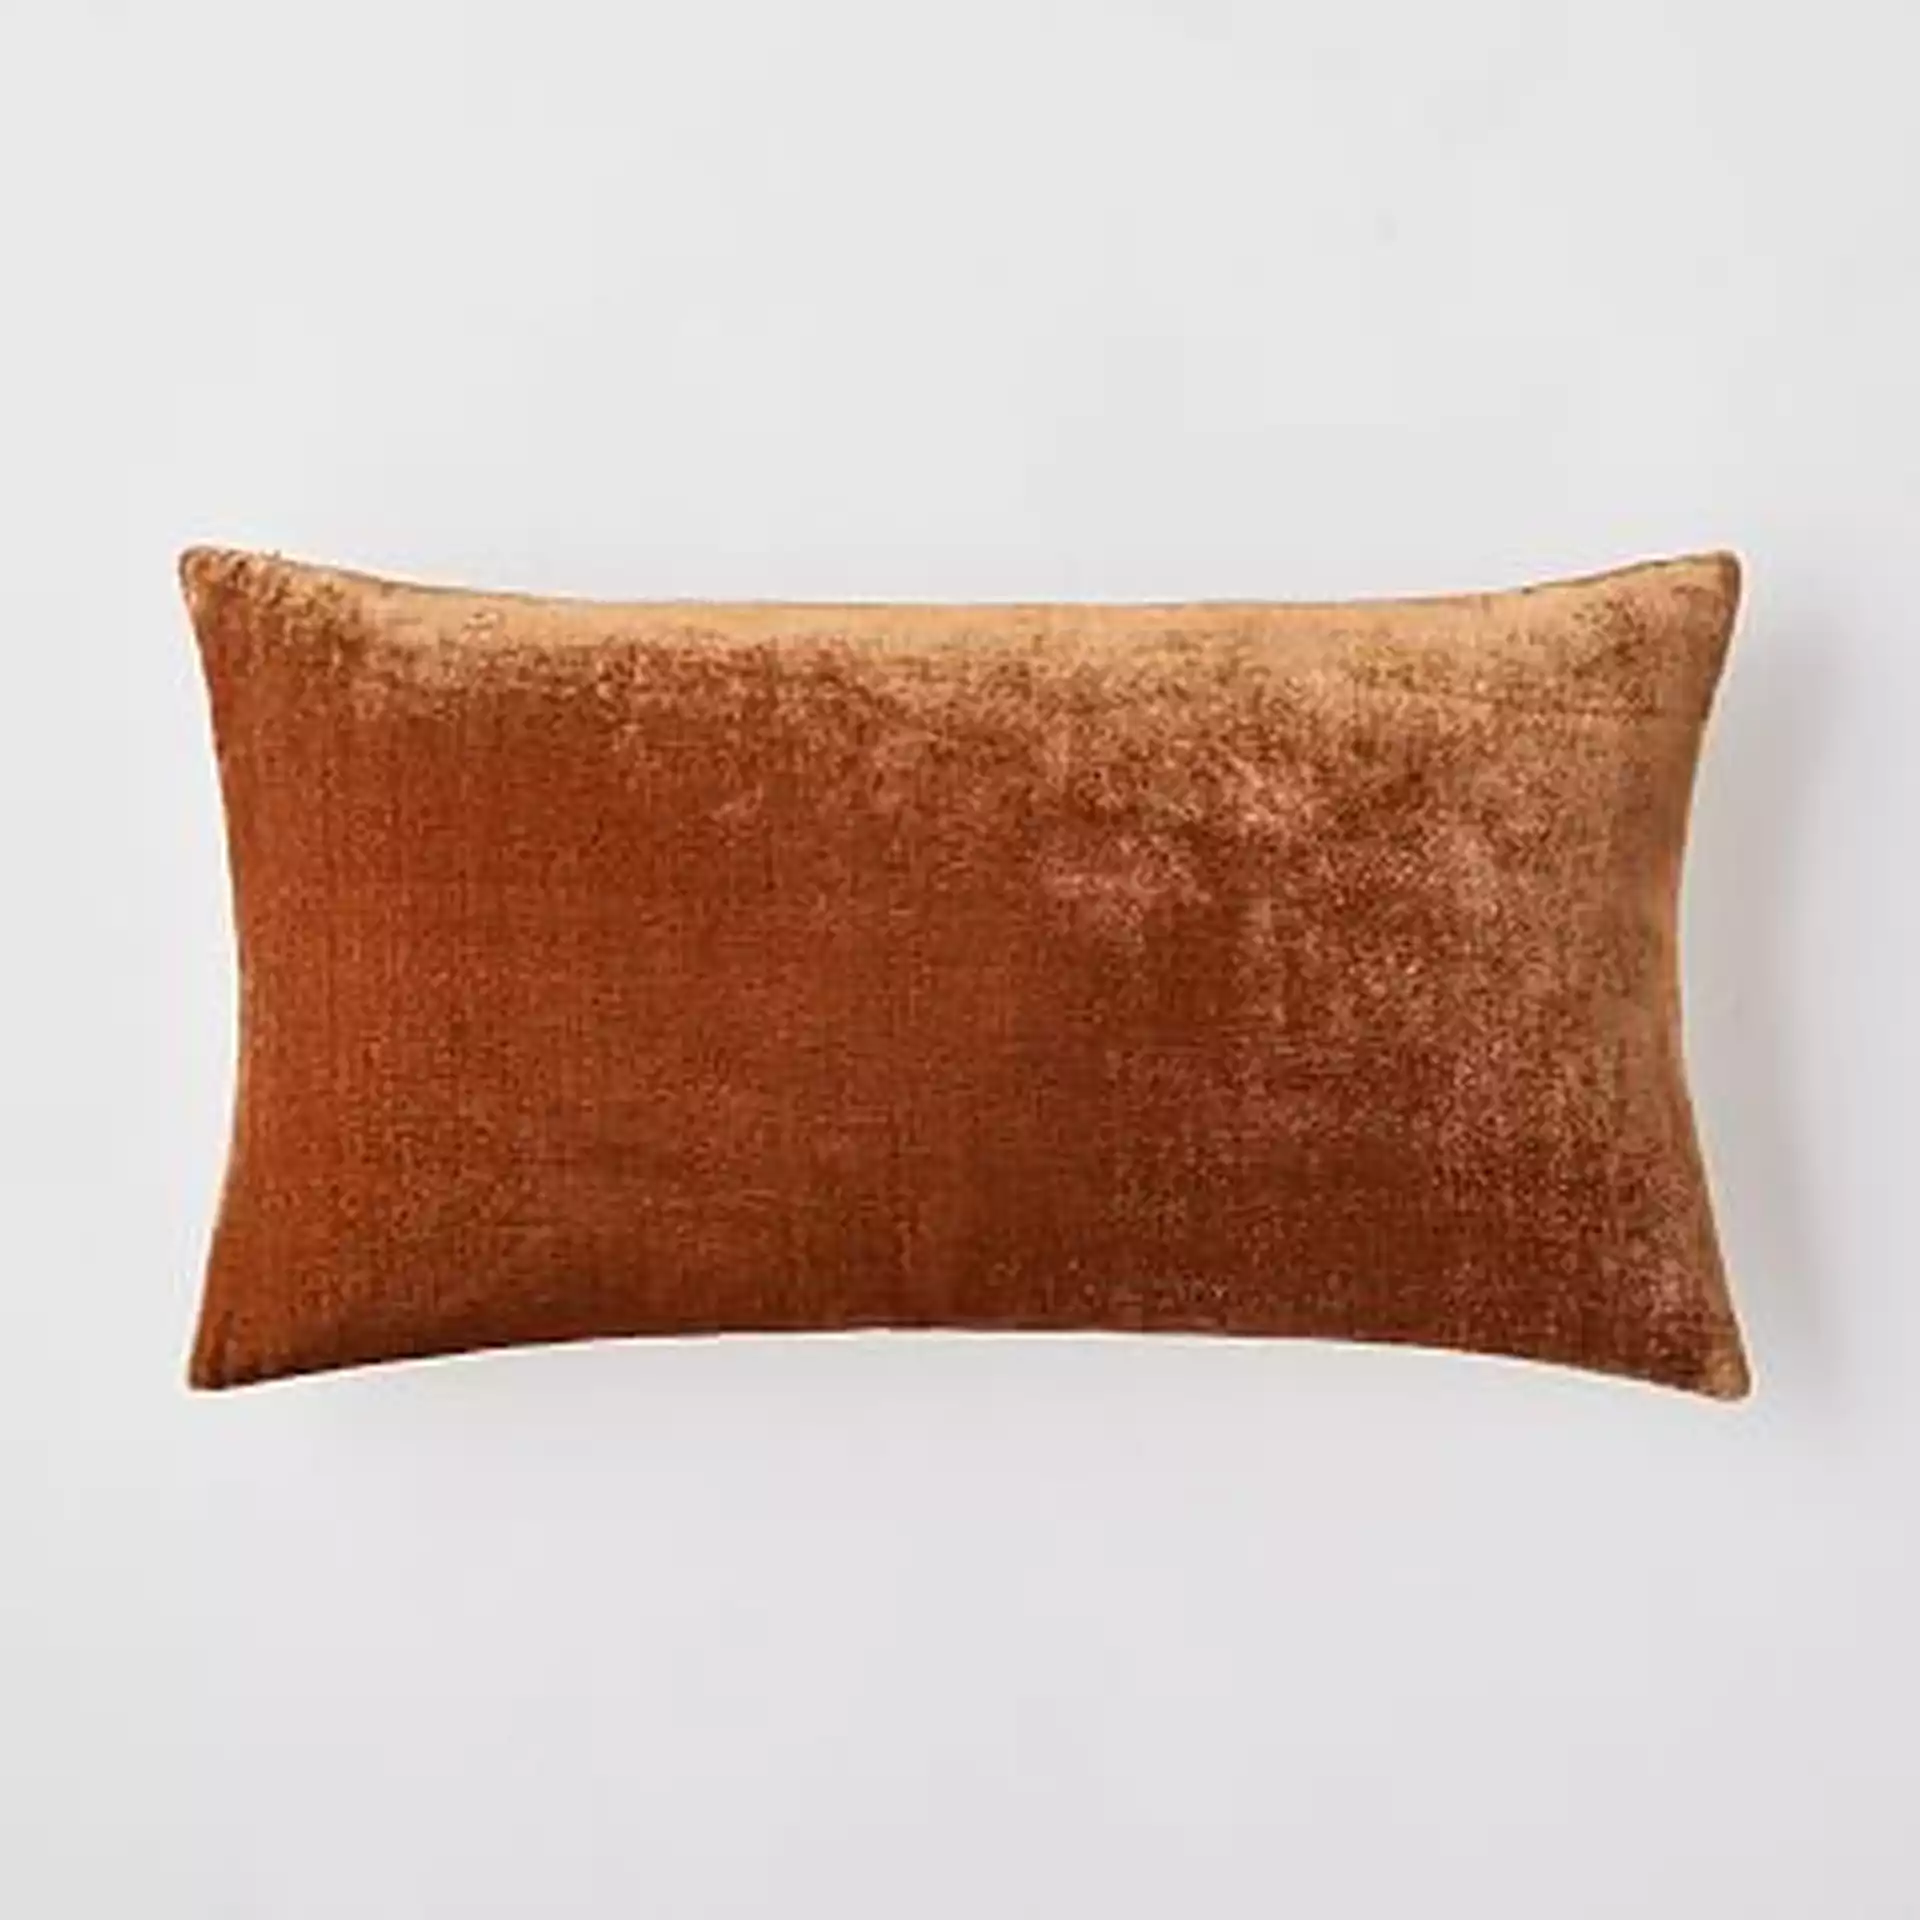 Lush Velvet Pillow Cover, 12"x21", Copper, Set of 2